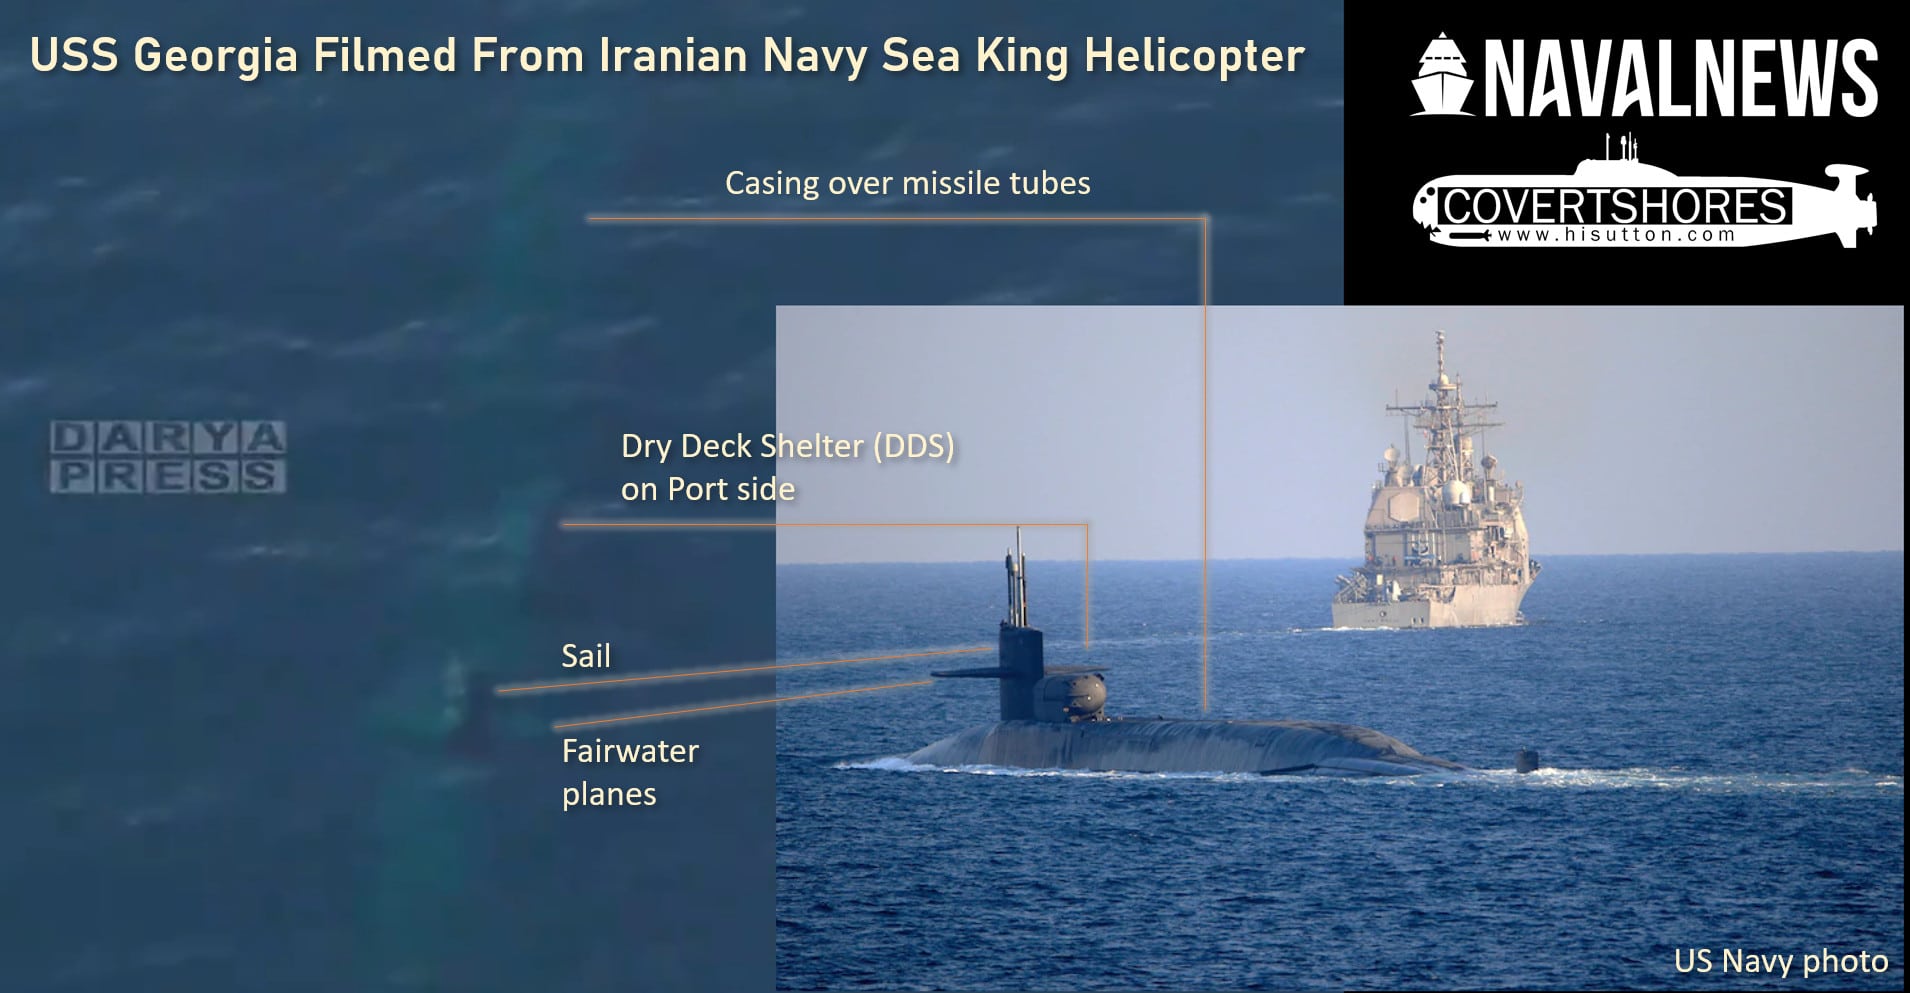 USS-Georgia-Filmed-From-Iranian-Navy-1.jpg